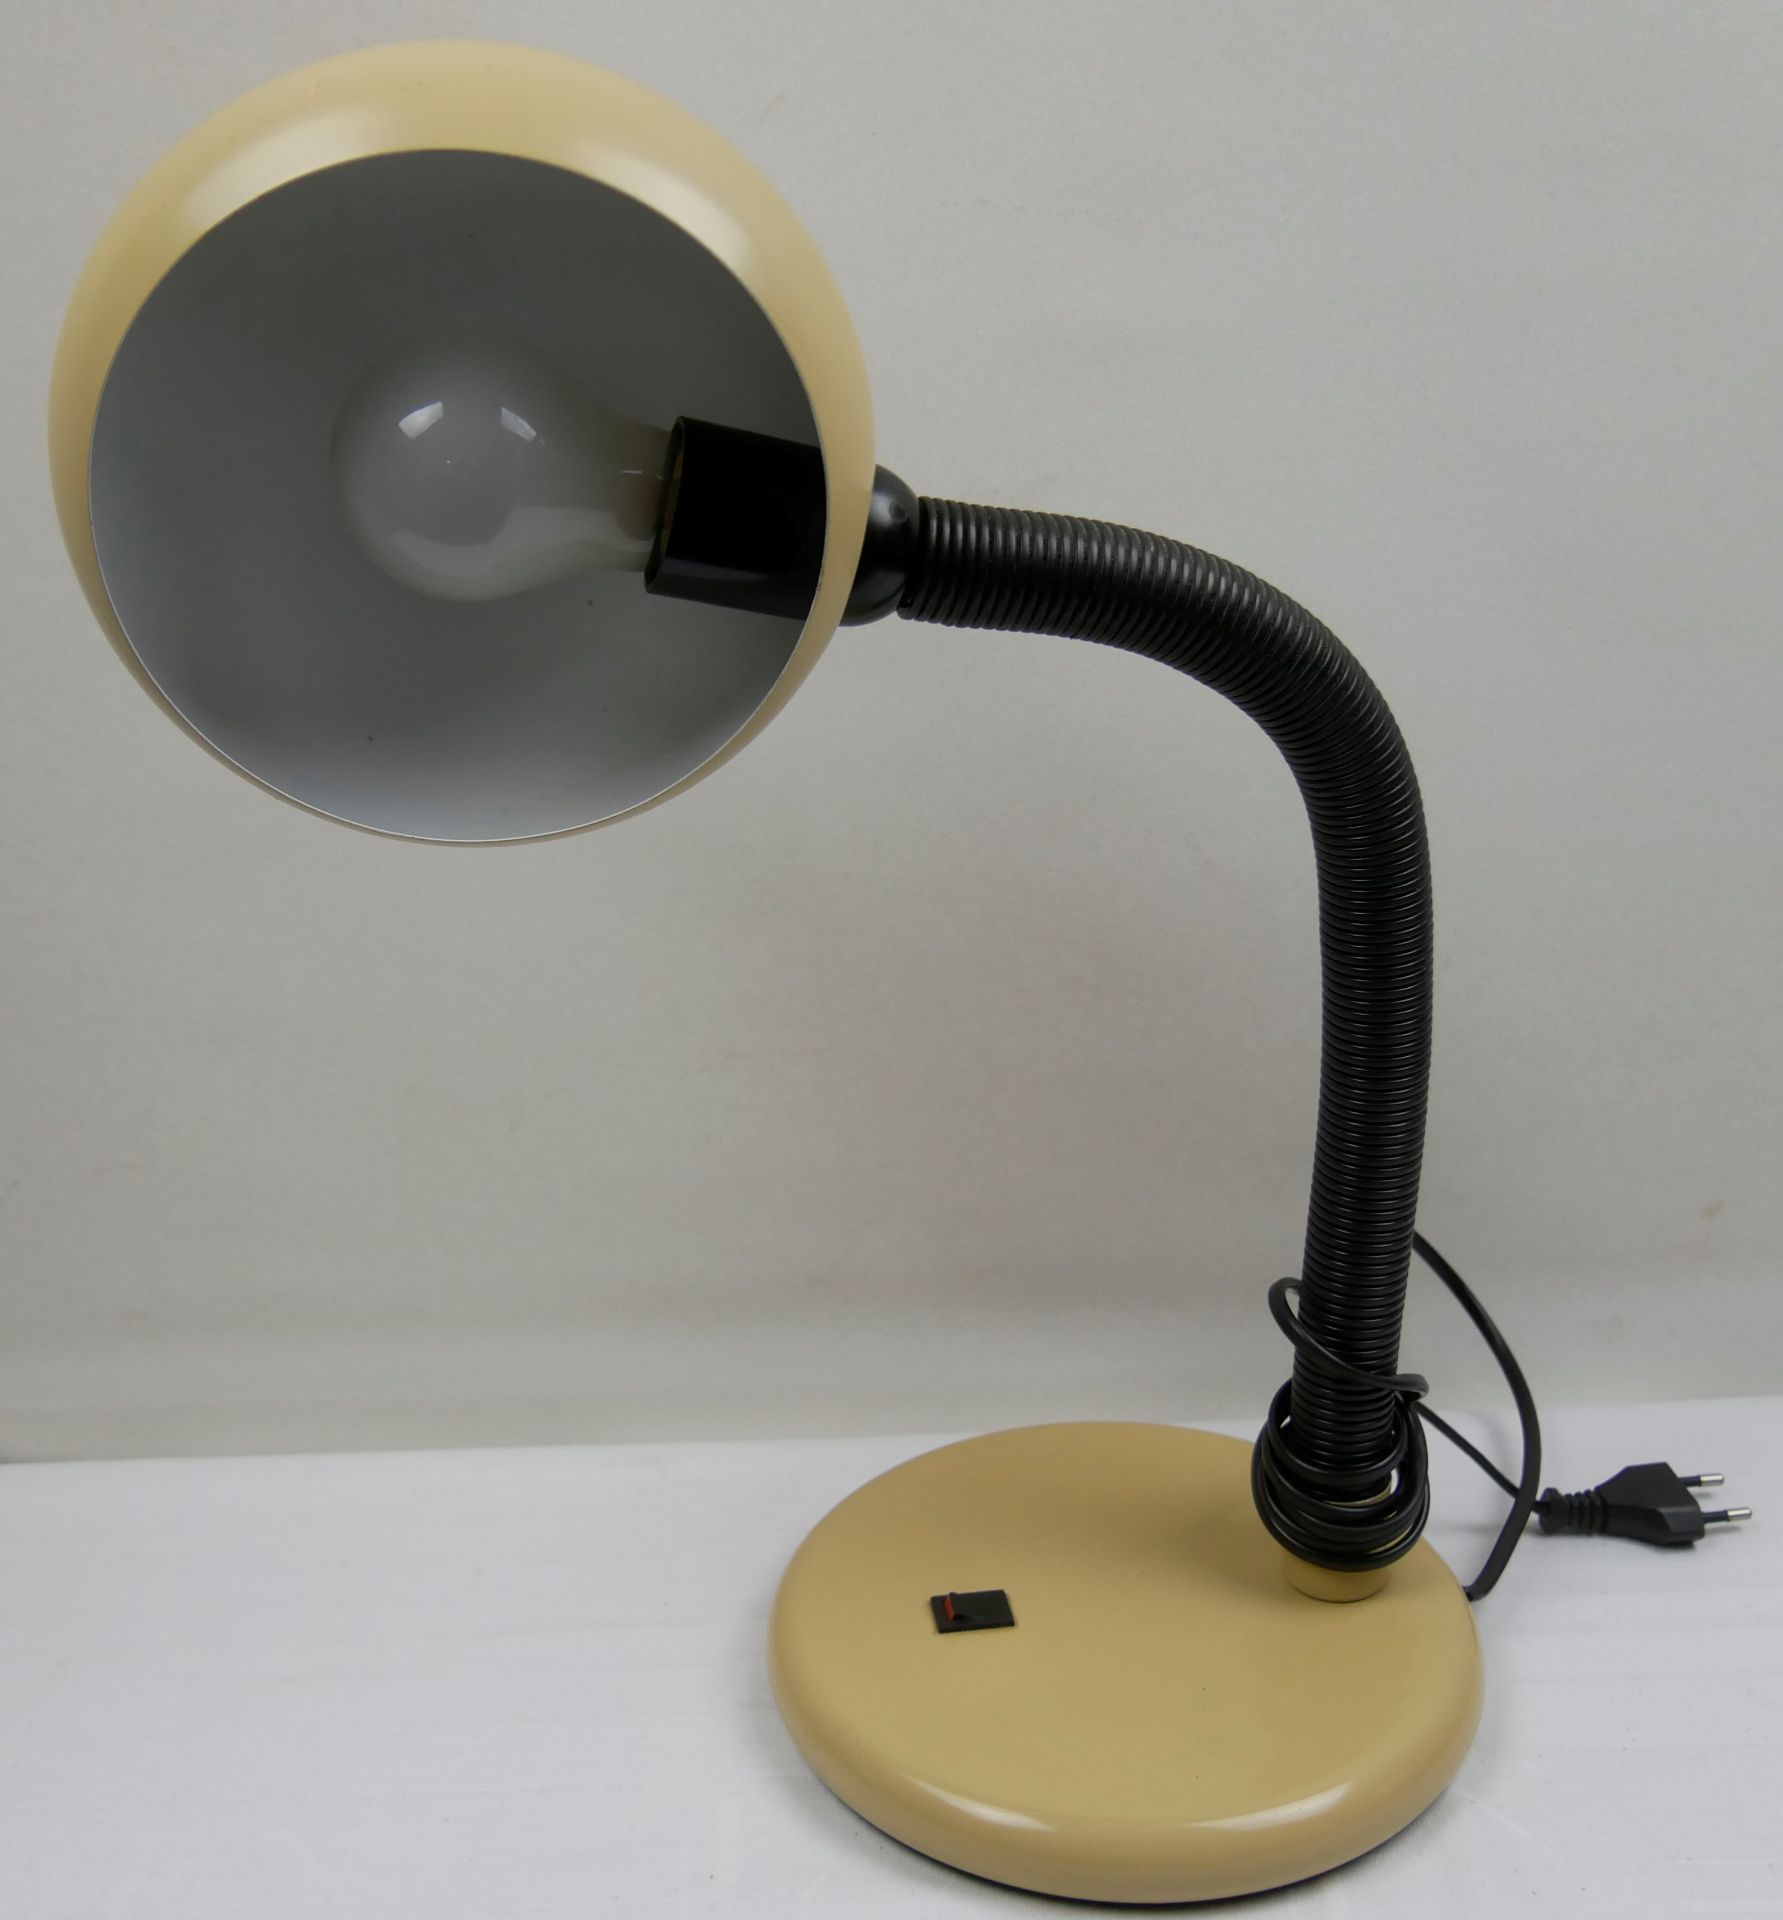 Brennenstuhl Bürotischlampe in Braun/Cremefarben. Typ B-136-75. Recht guter Zustand.Höhe ca. 58 cm - Bild 2 aus 2